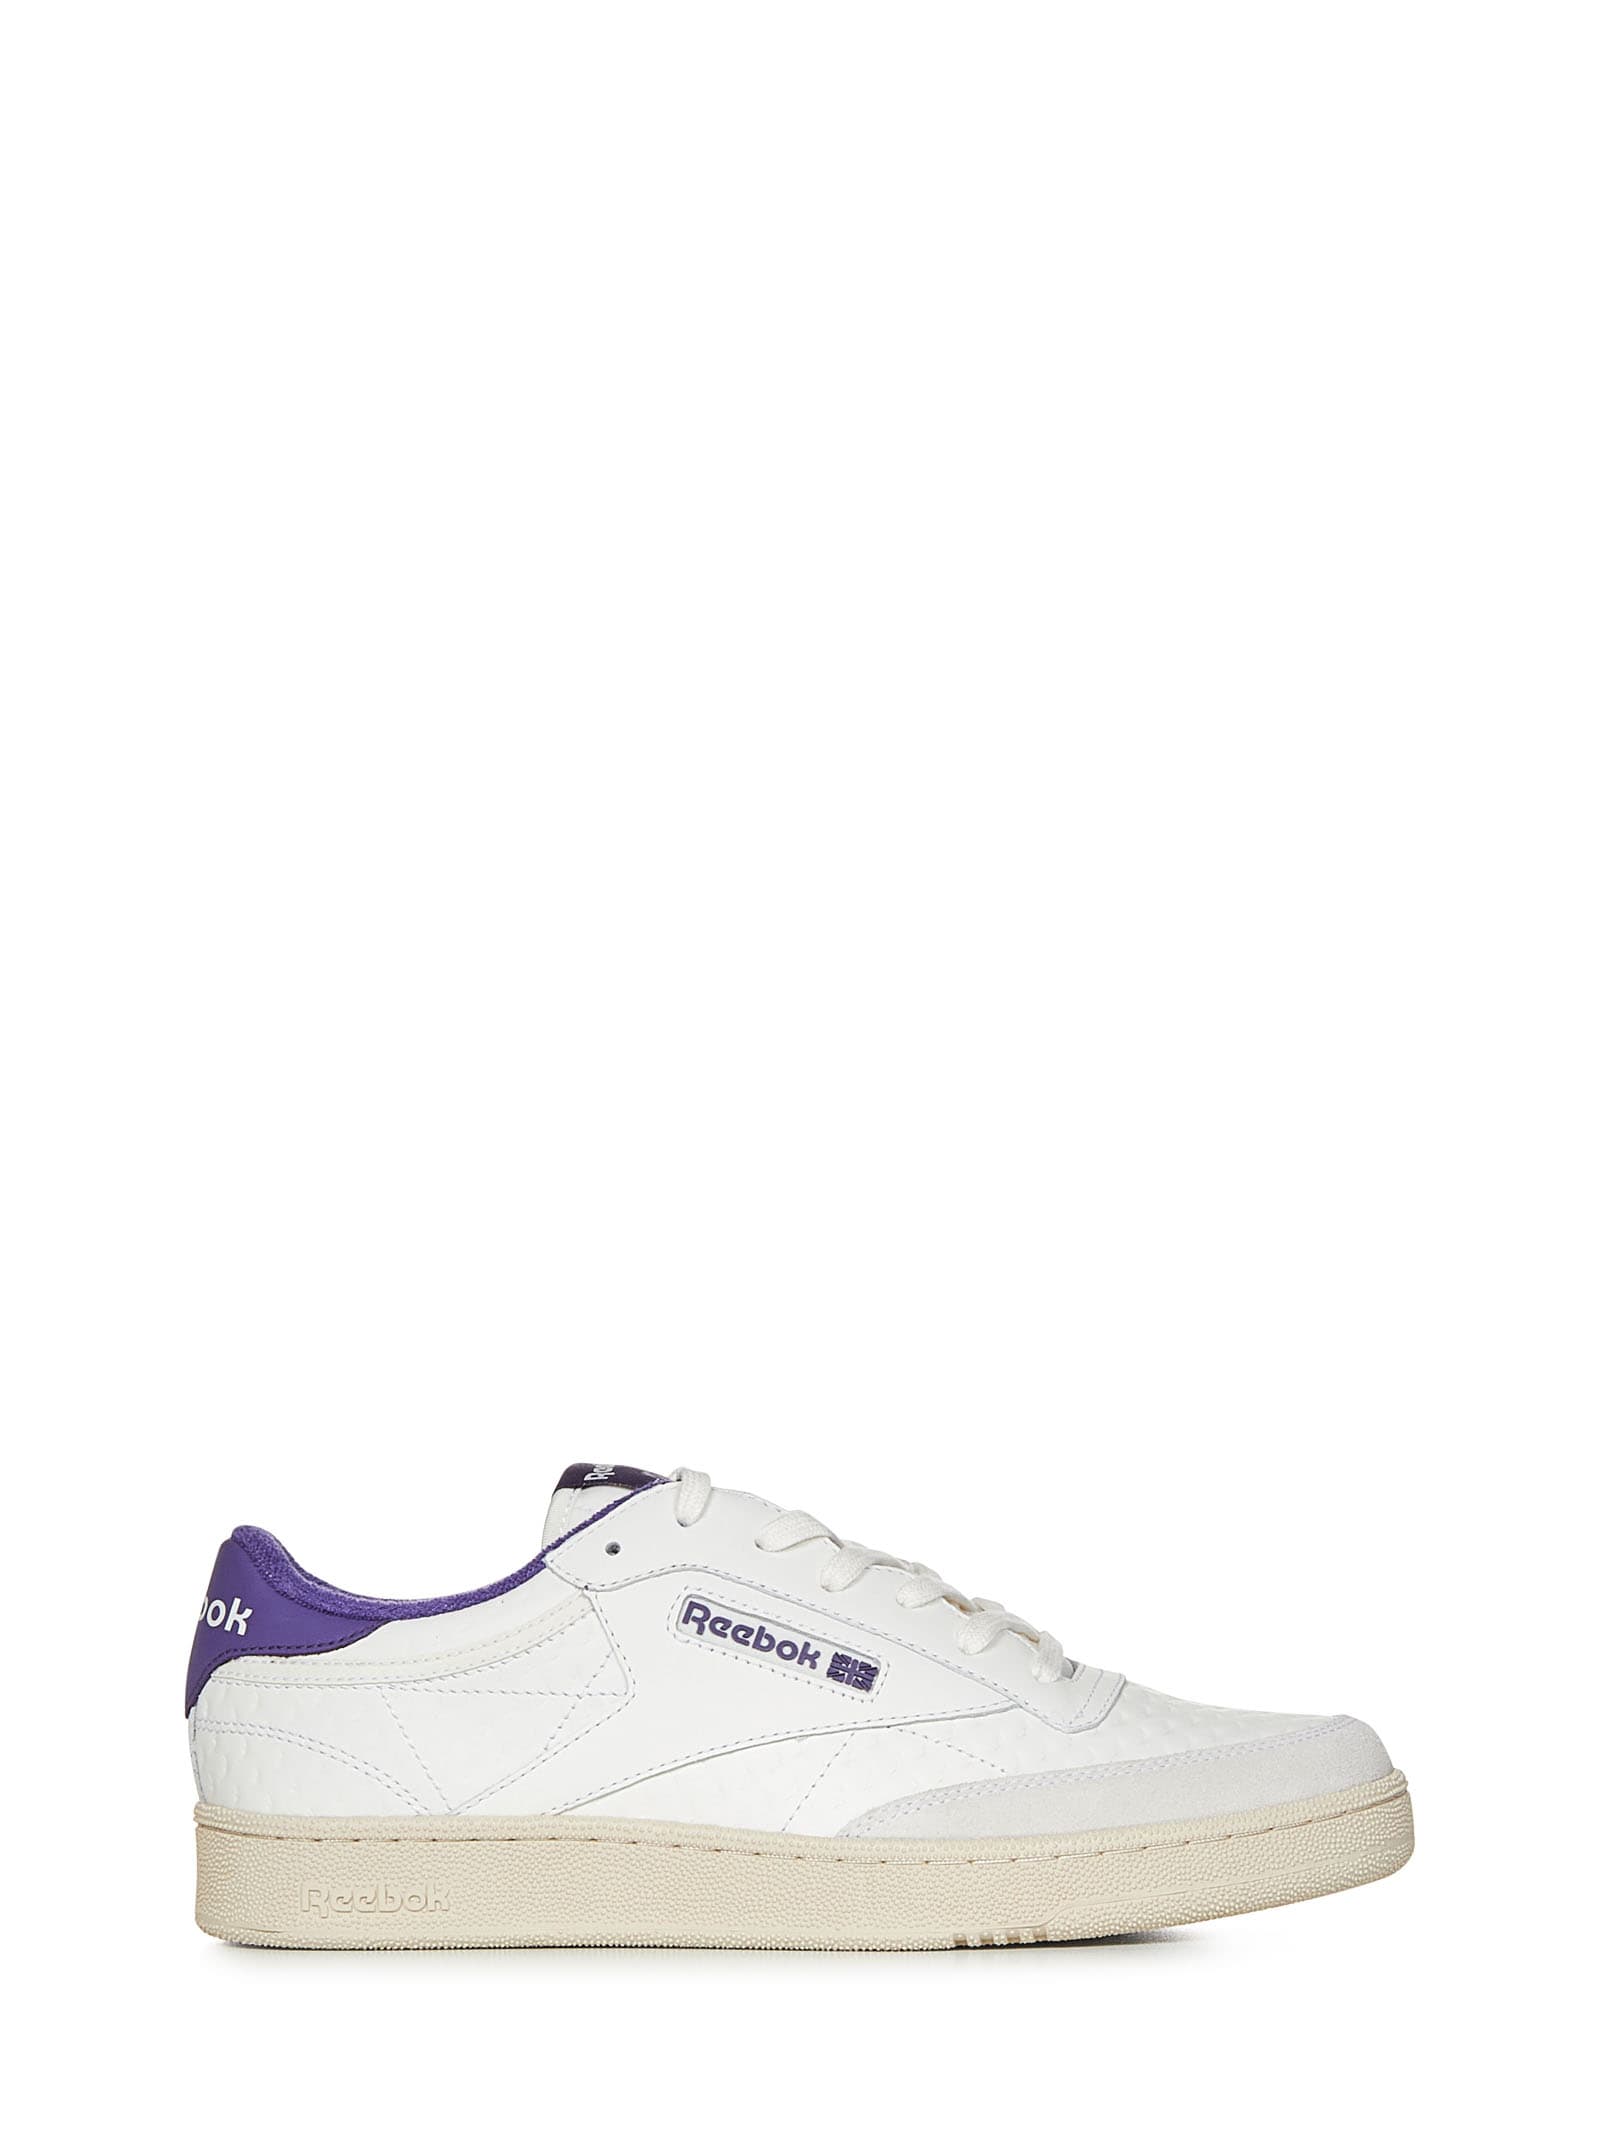 Reebok Club C Sneakers In Purple